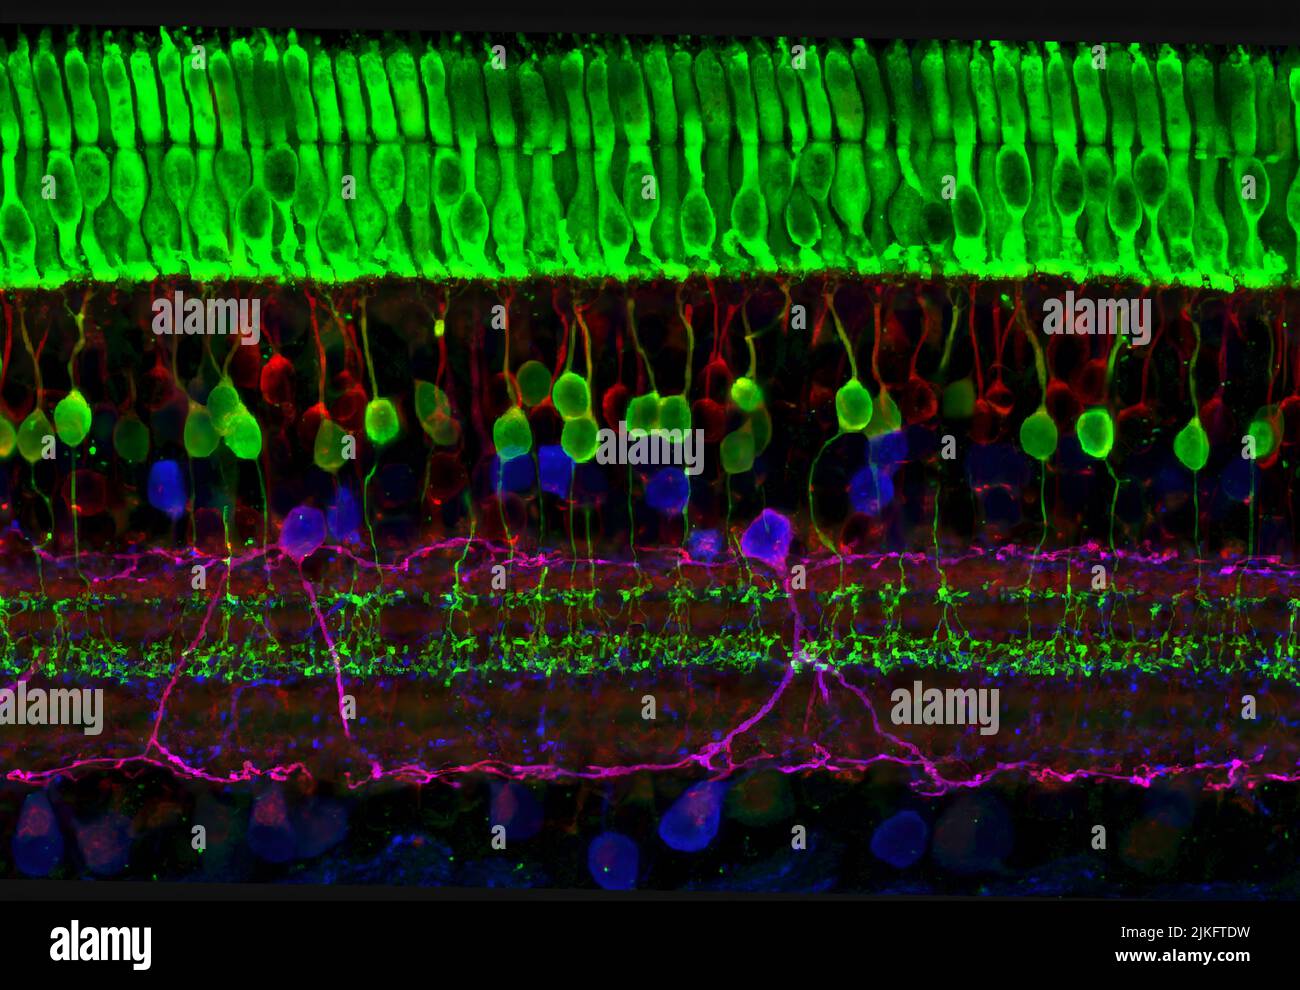 Dieses Bild zeigt die vielen Schichten von Nervenzellen in der Netzhaut. Die obere (grüne) Schicht besteht aus Zellen, den sogenannten Photorezeptoren, die Licht in elektrische Signale umwandeln und an das Gehirn senden. Die beiden bekanntesten Arten von Photorezeptorzellen sind stabförmig und kegelförmig. Stäbe helfen uns bei schlechten Lichtverhältnissen zu sehen, aber können und Stockfoto